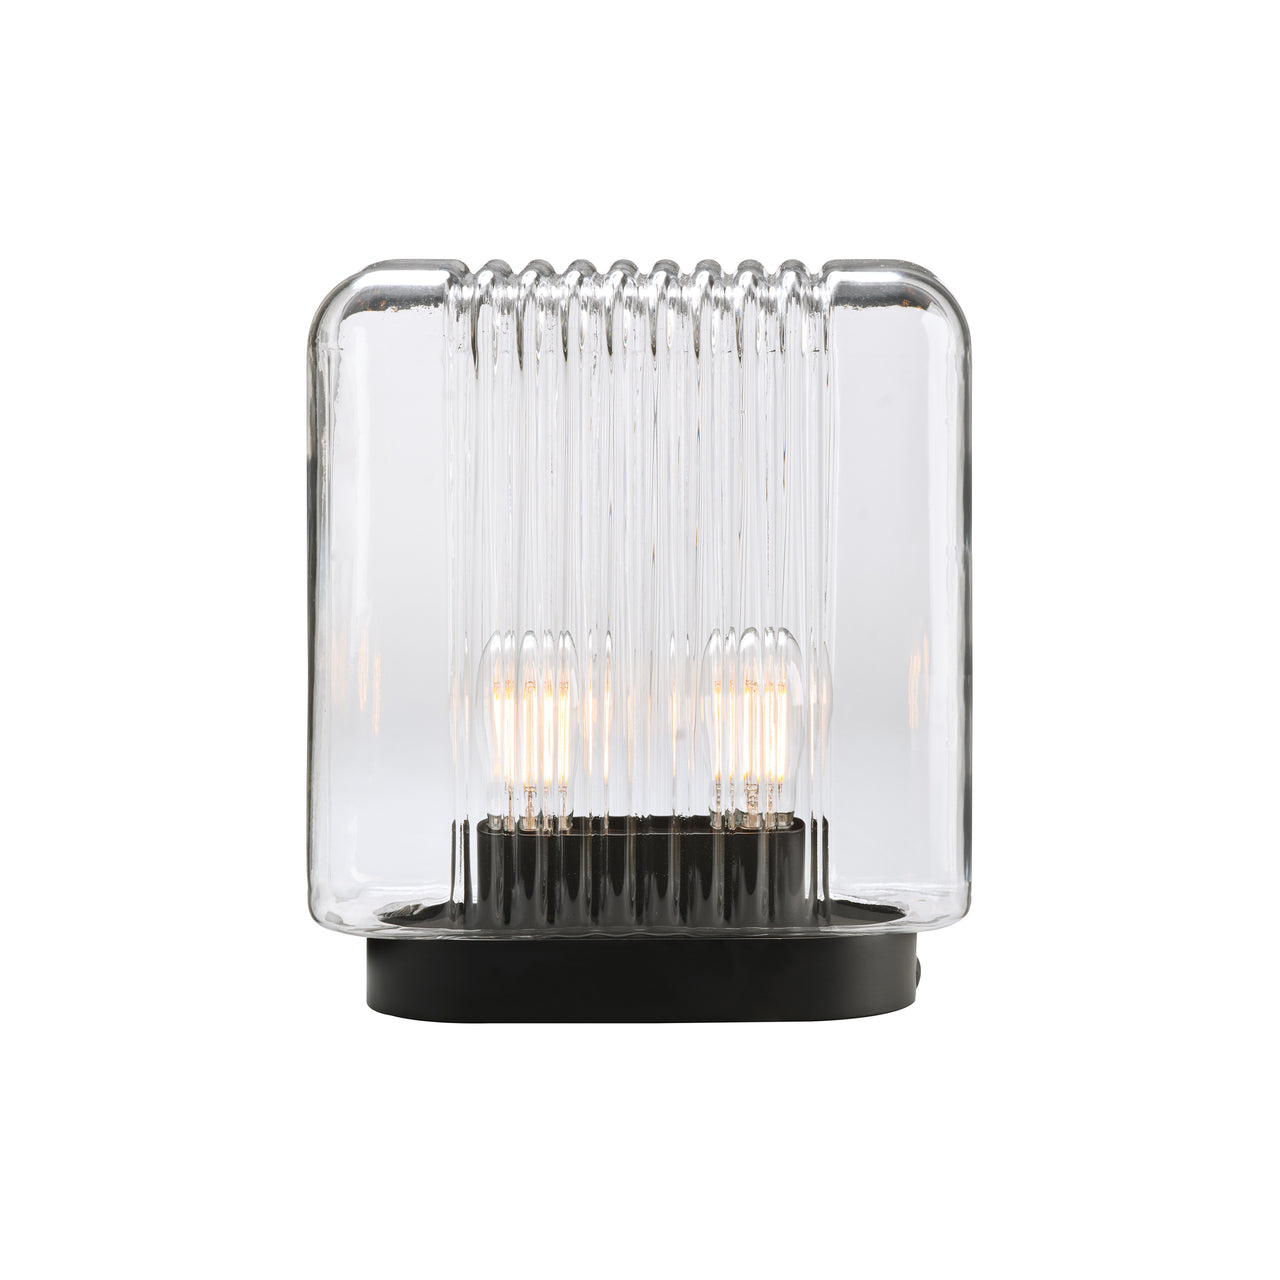 Lari Mini Table Lamp: Portable